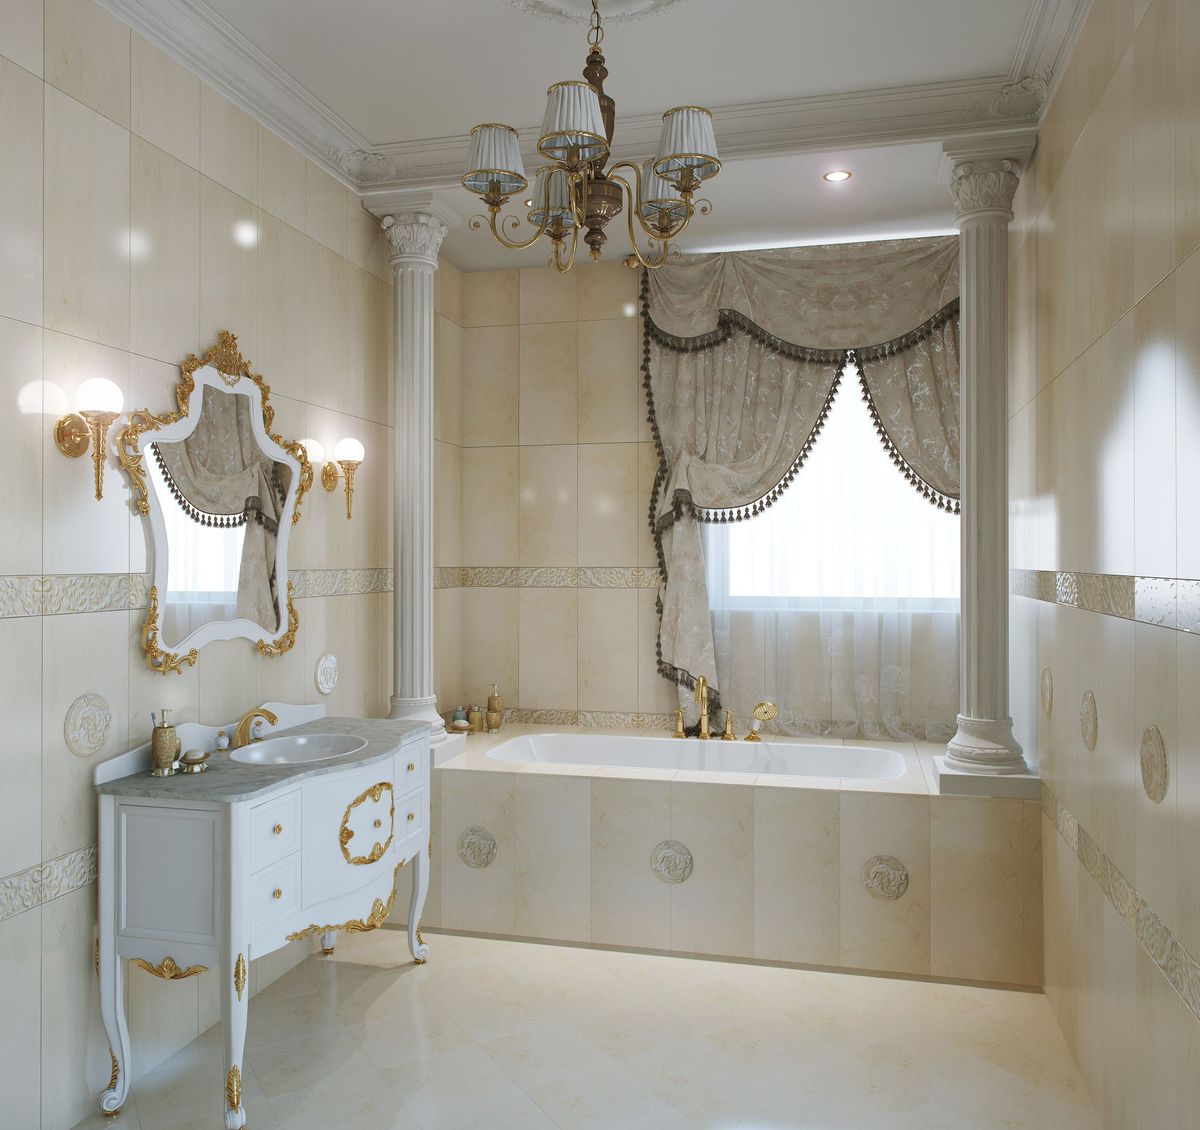 Дизайн интерьера ванной в классическом стиле » Картинки и фотографии .